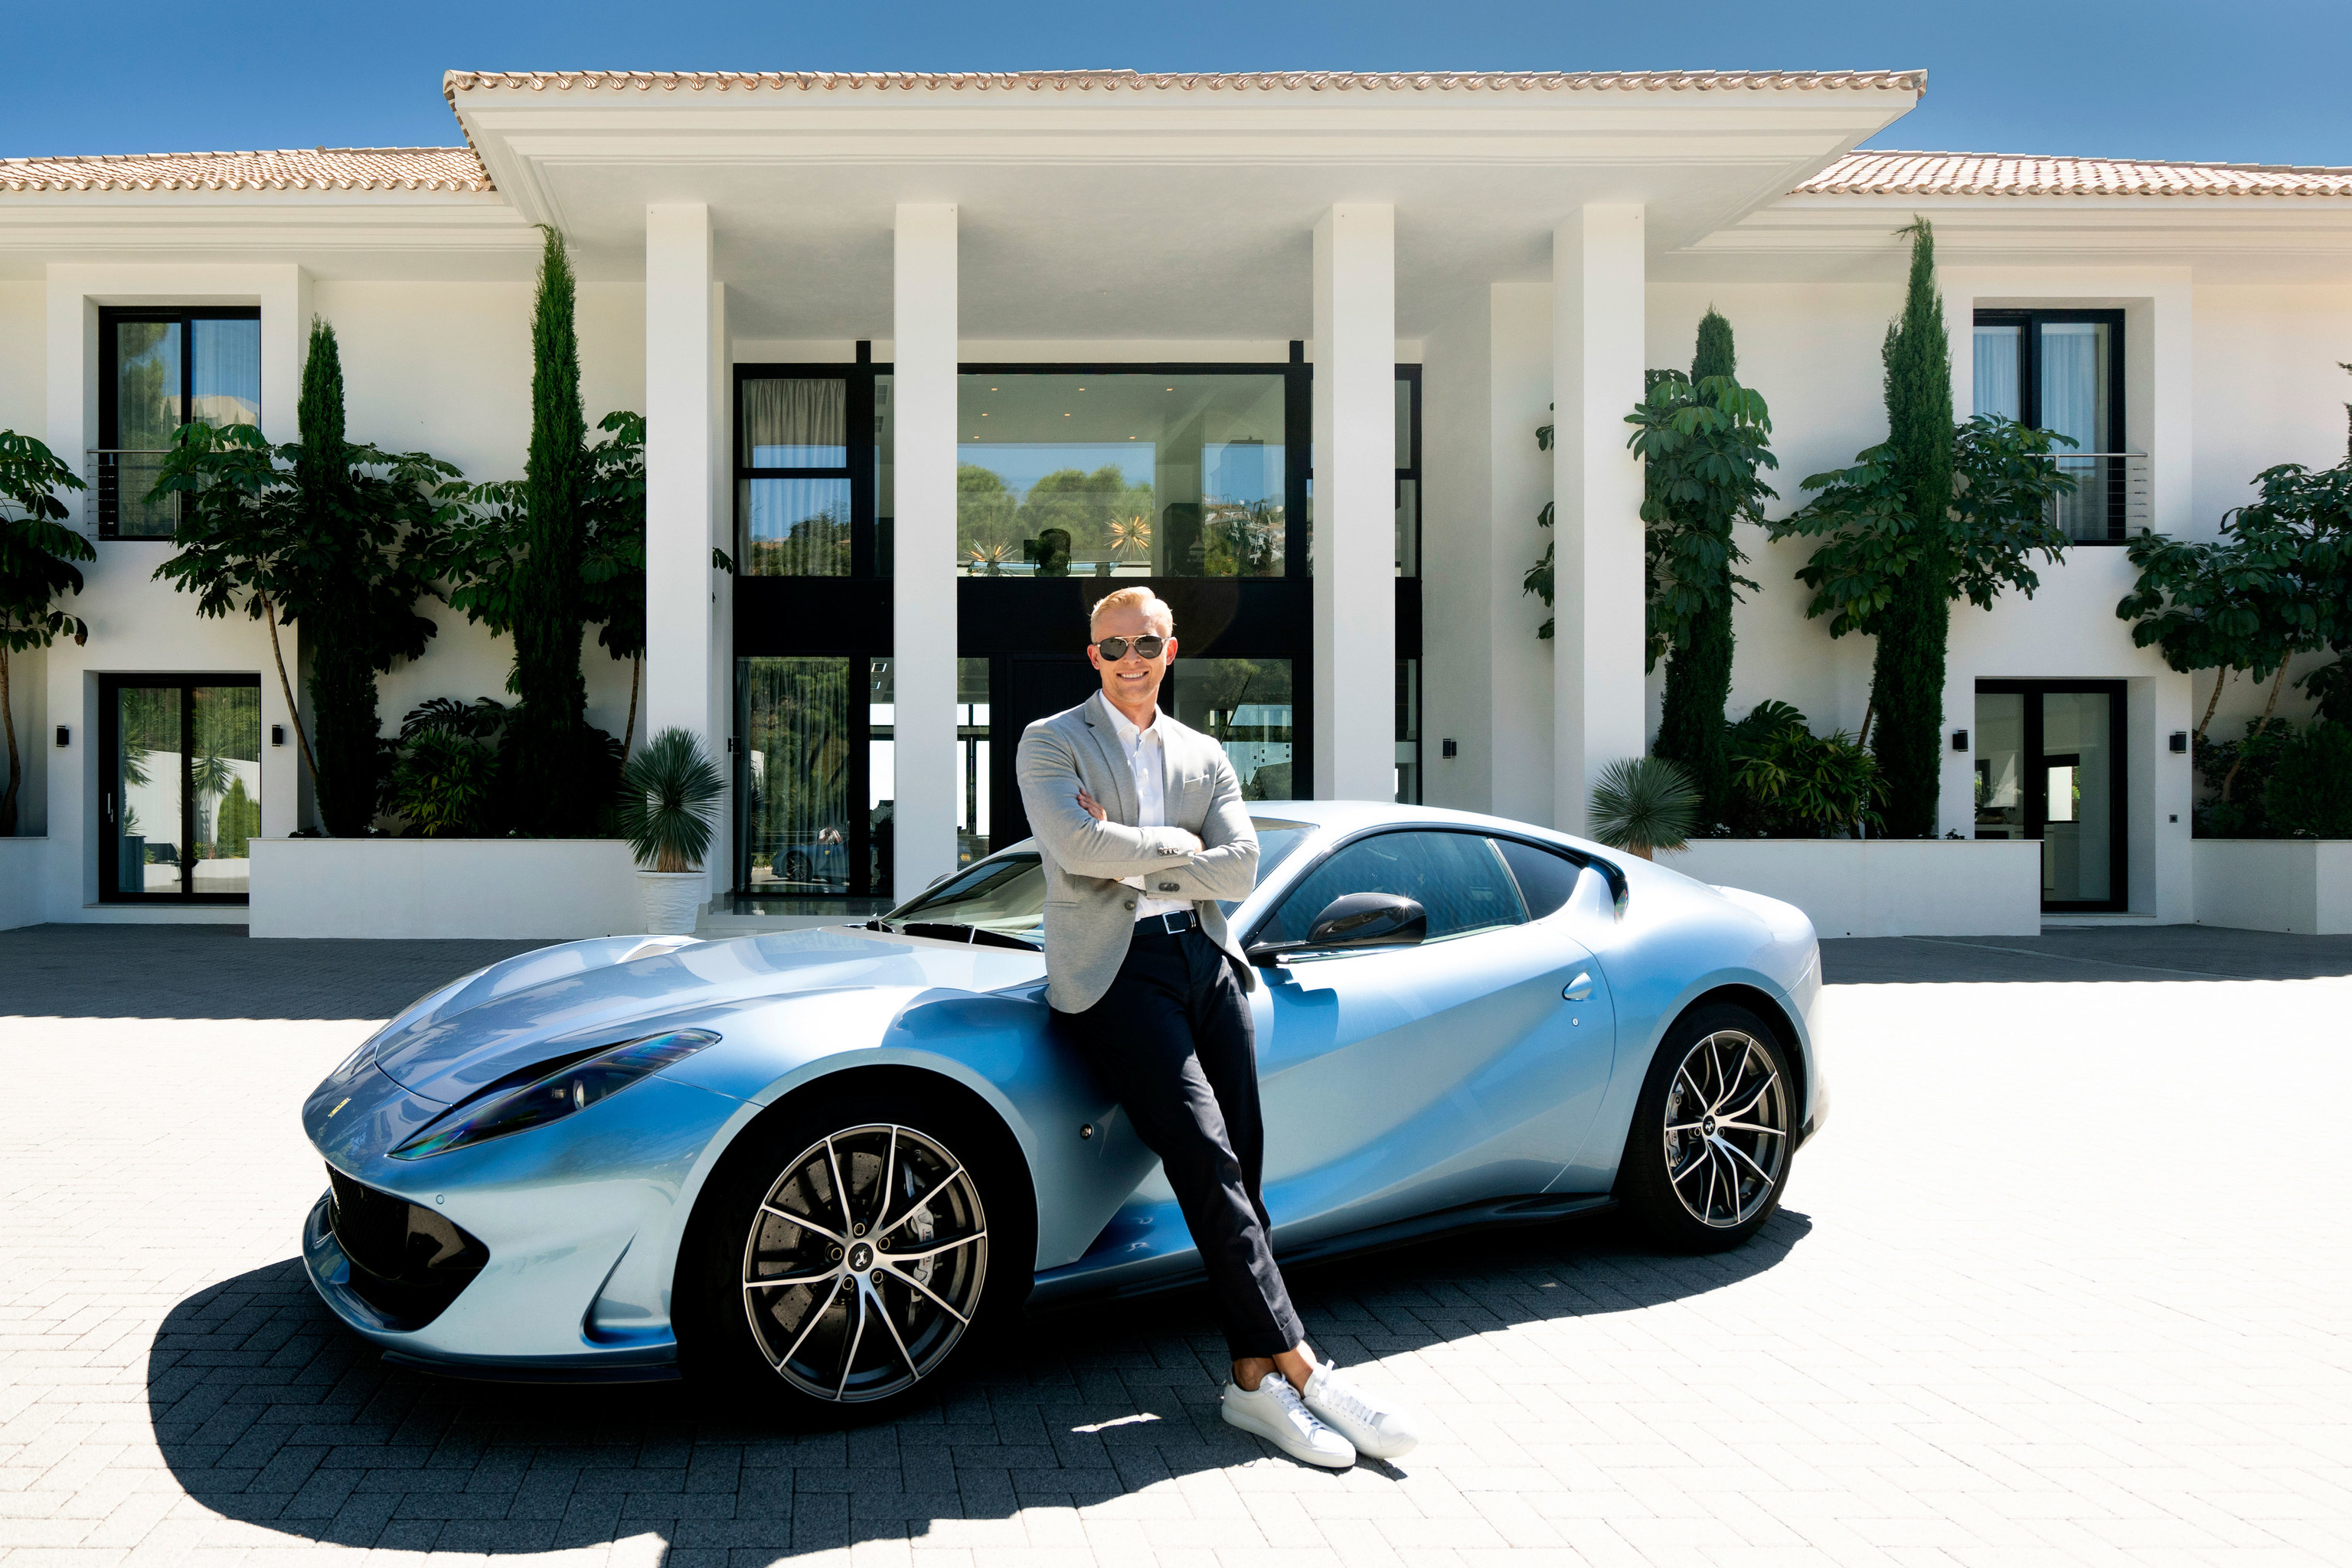 Artur Loginov posa con un Lamborghini frente a una de las casas que tiene a la venta.